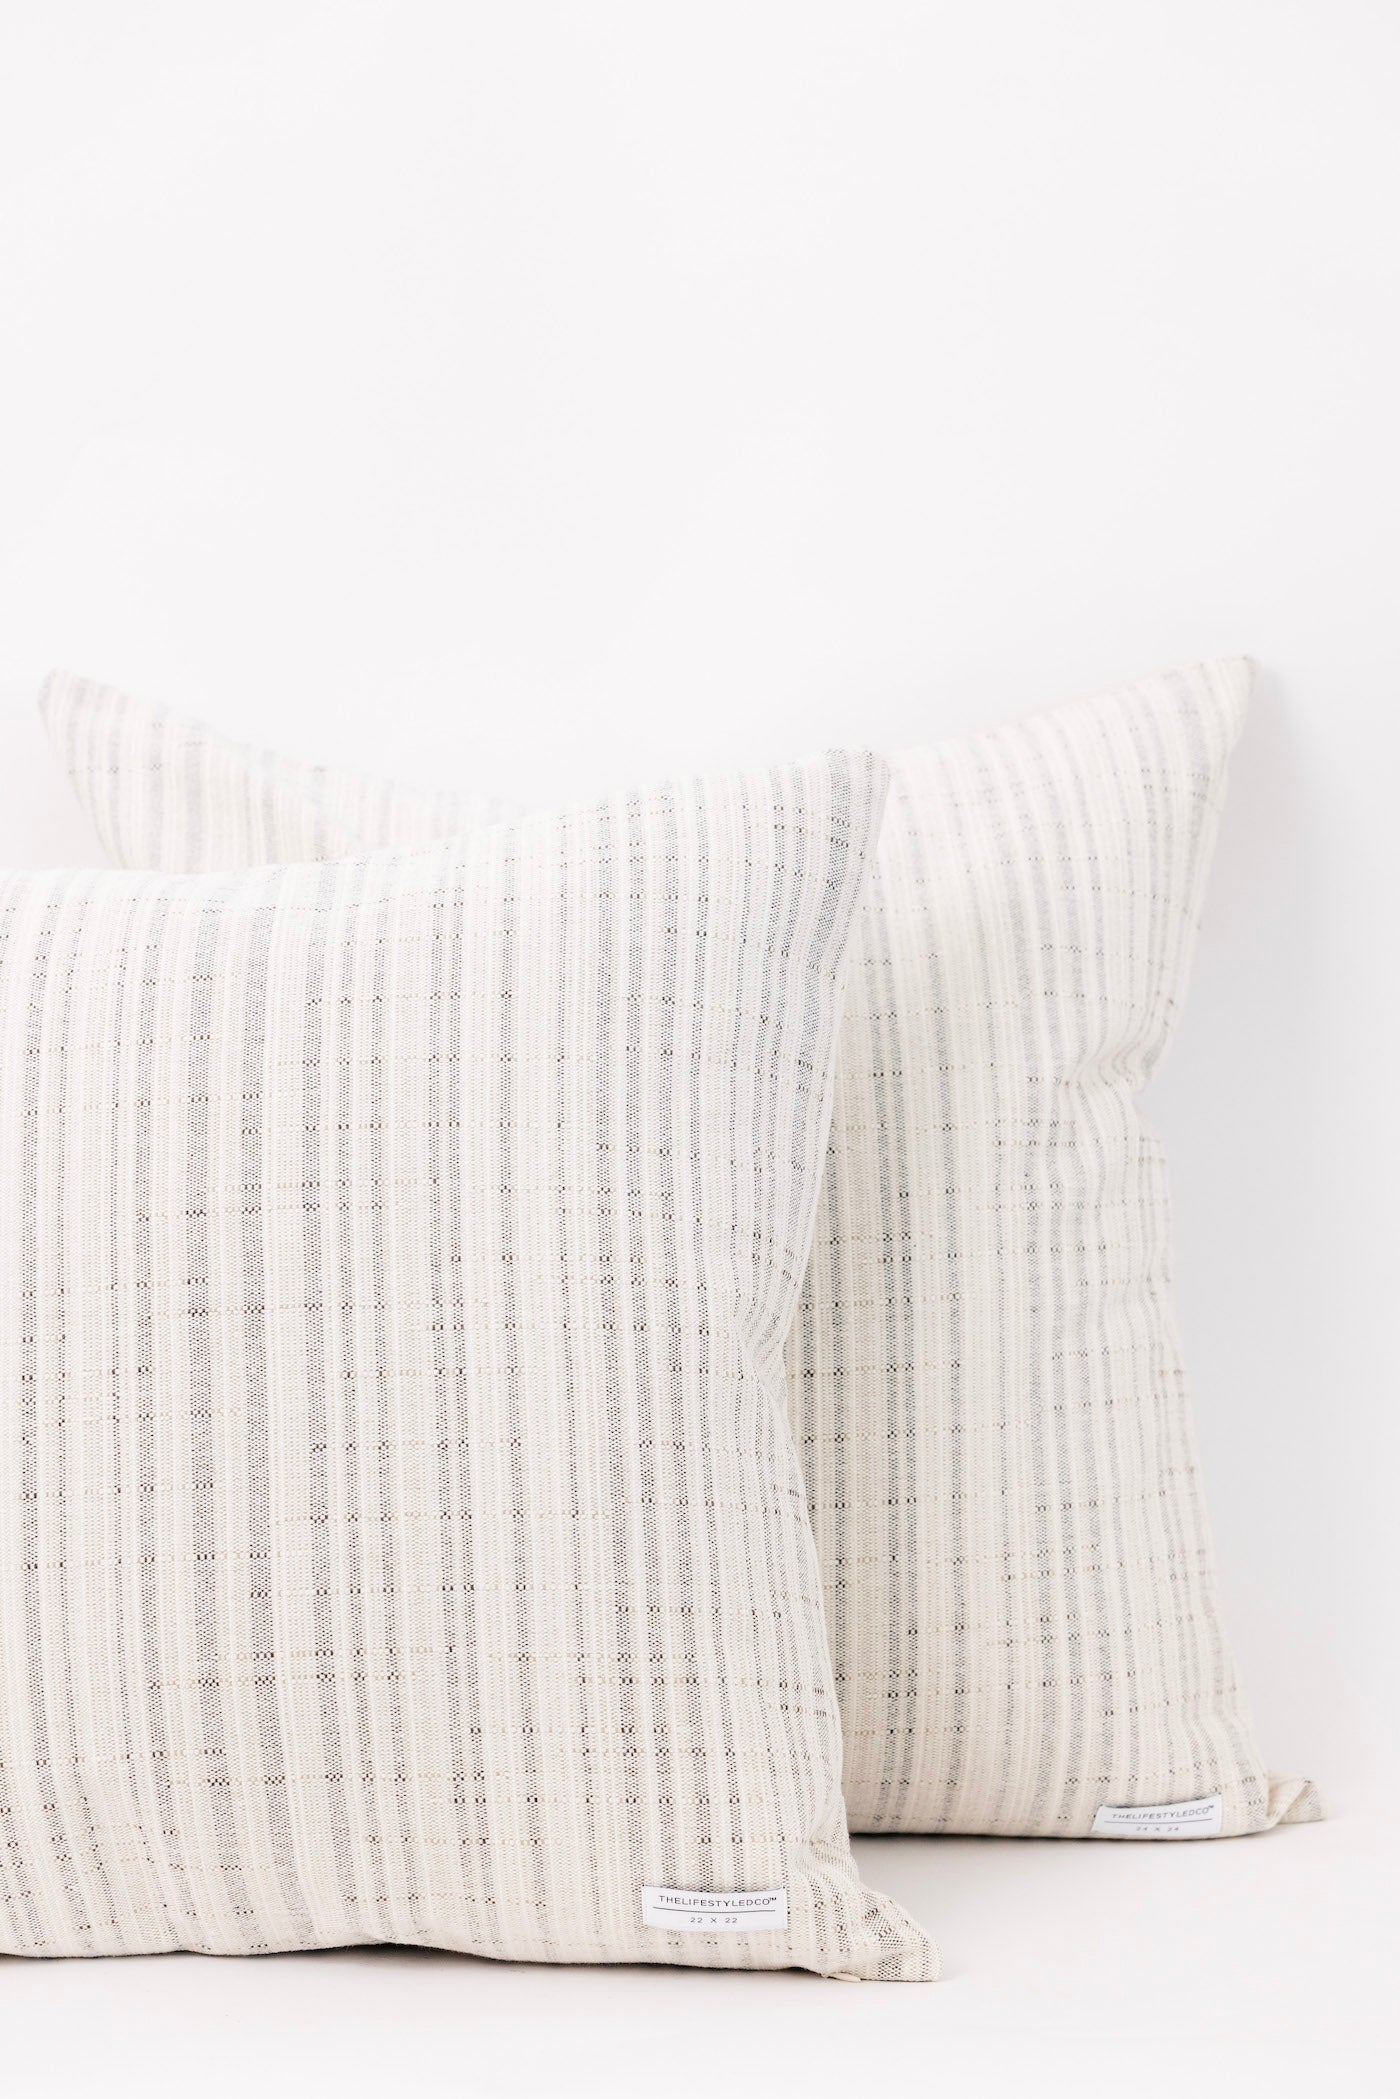 Brenham Stripe Pillow - Natural - 2 Sizes